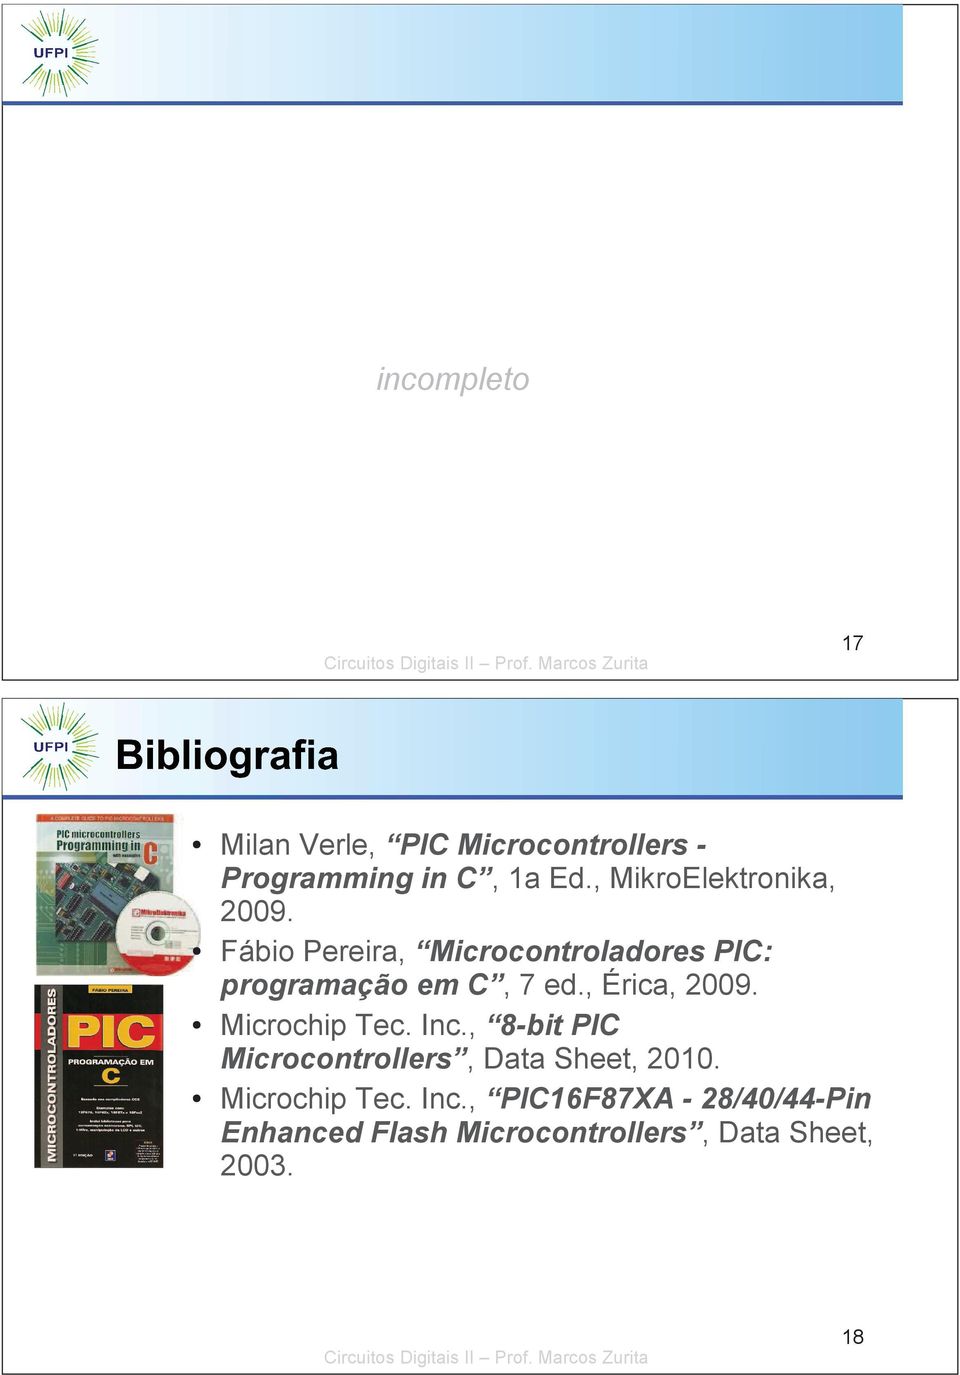 Fábio Pereira, Microcontroladores PIC: programação em C, 7 ed., Érica, 2009.